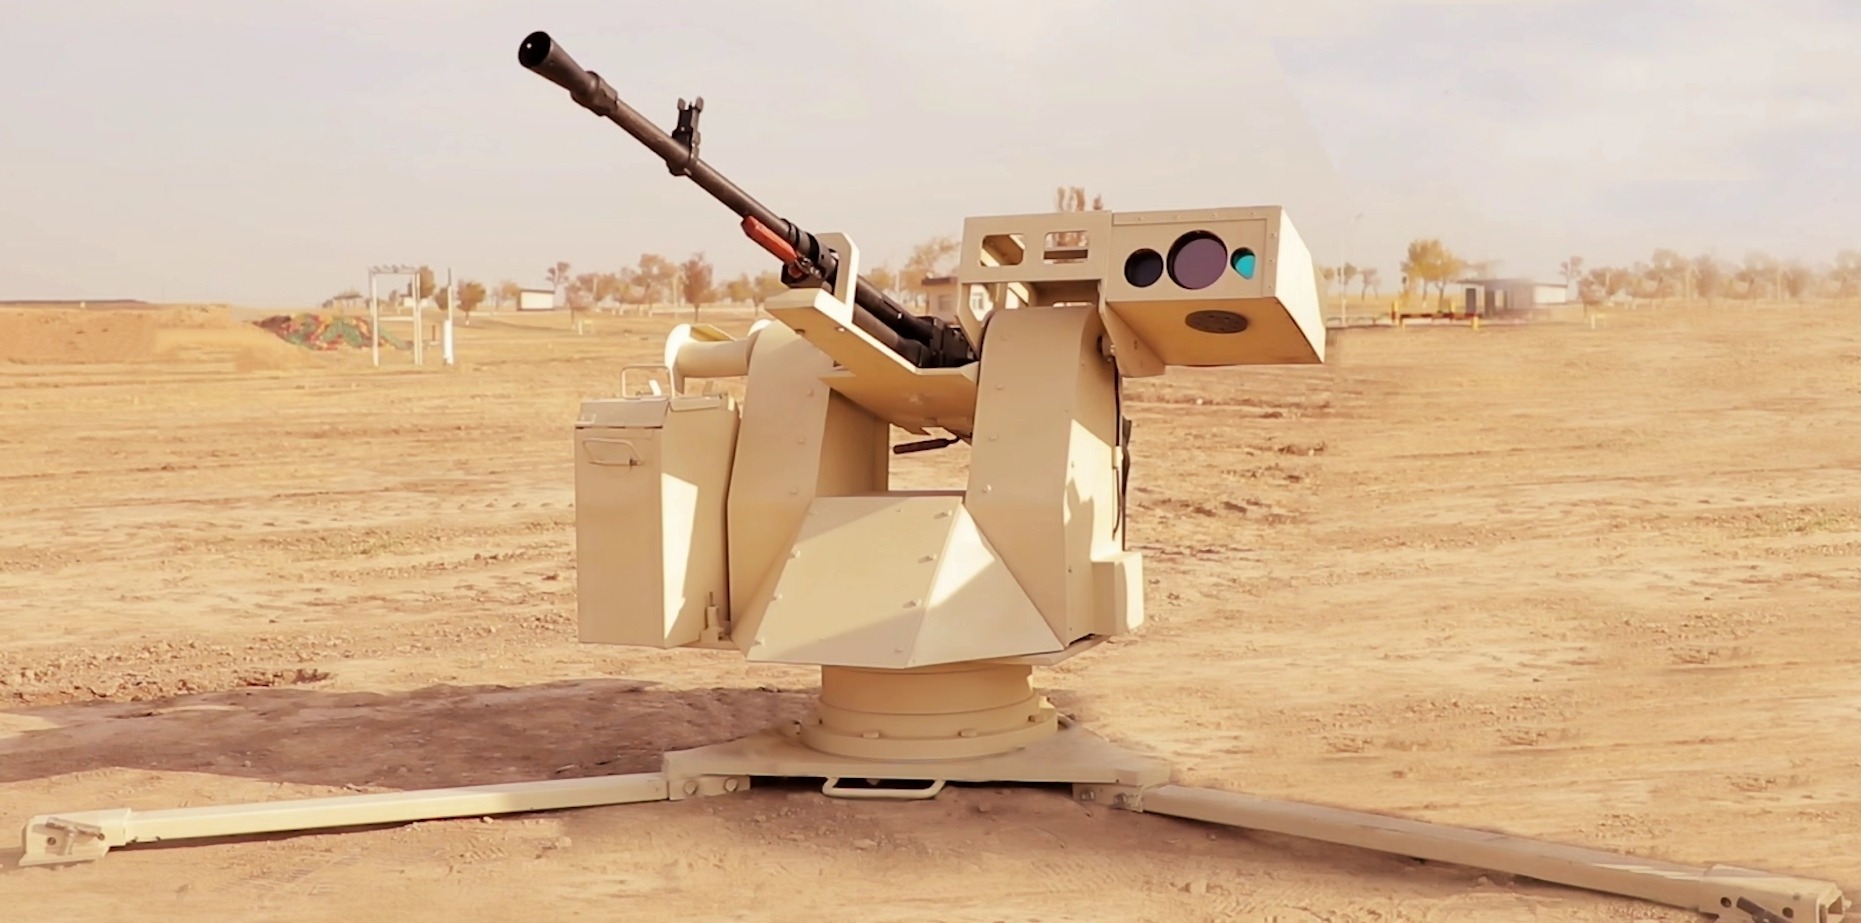 Дистанционный боевой модуль на базе крупнокалиберного пулемета «Утес», созданый в Узбекистане